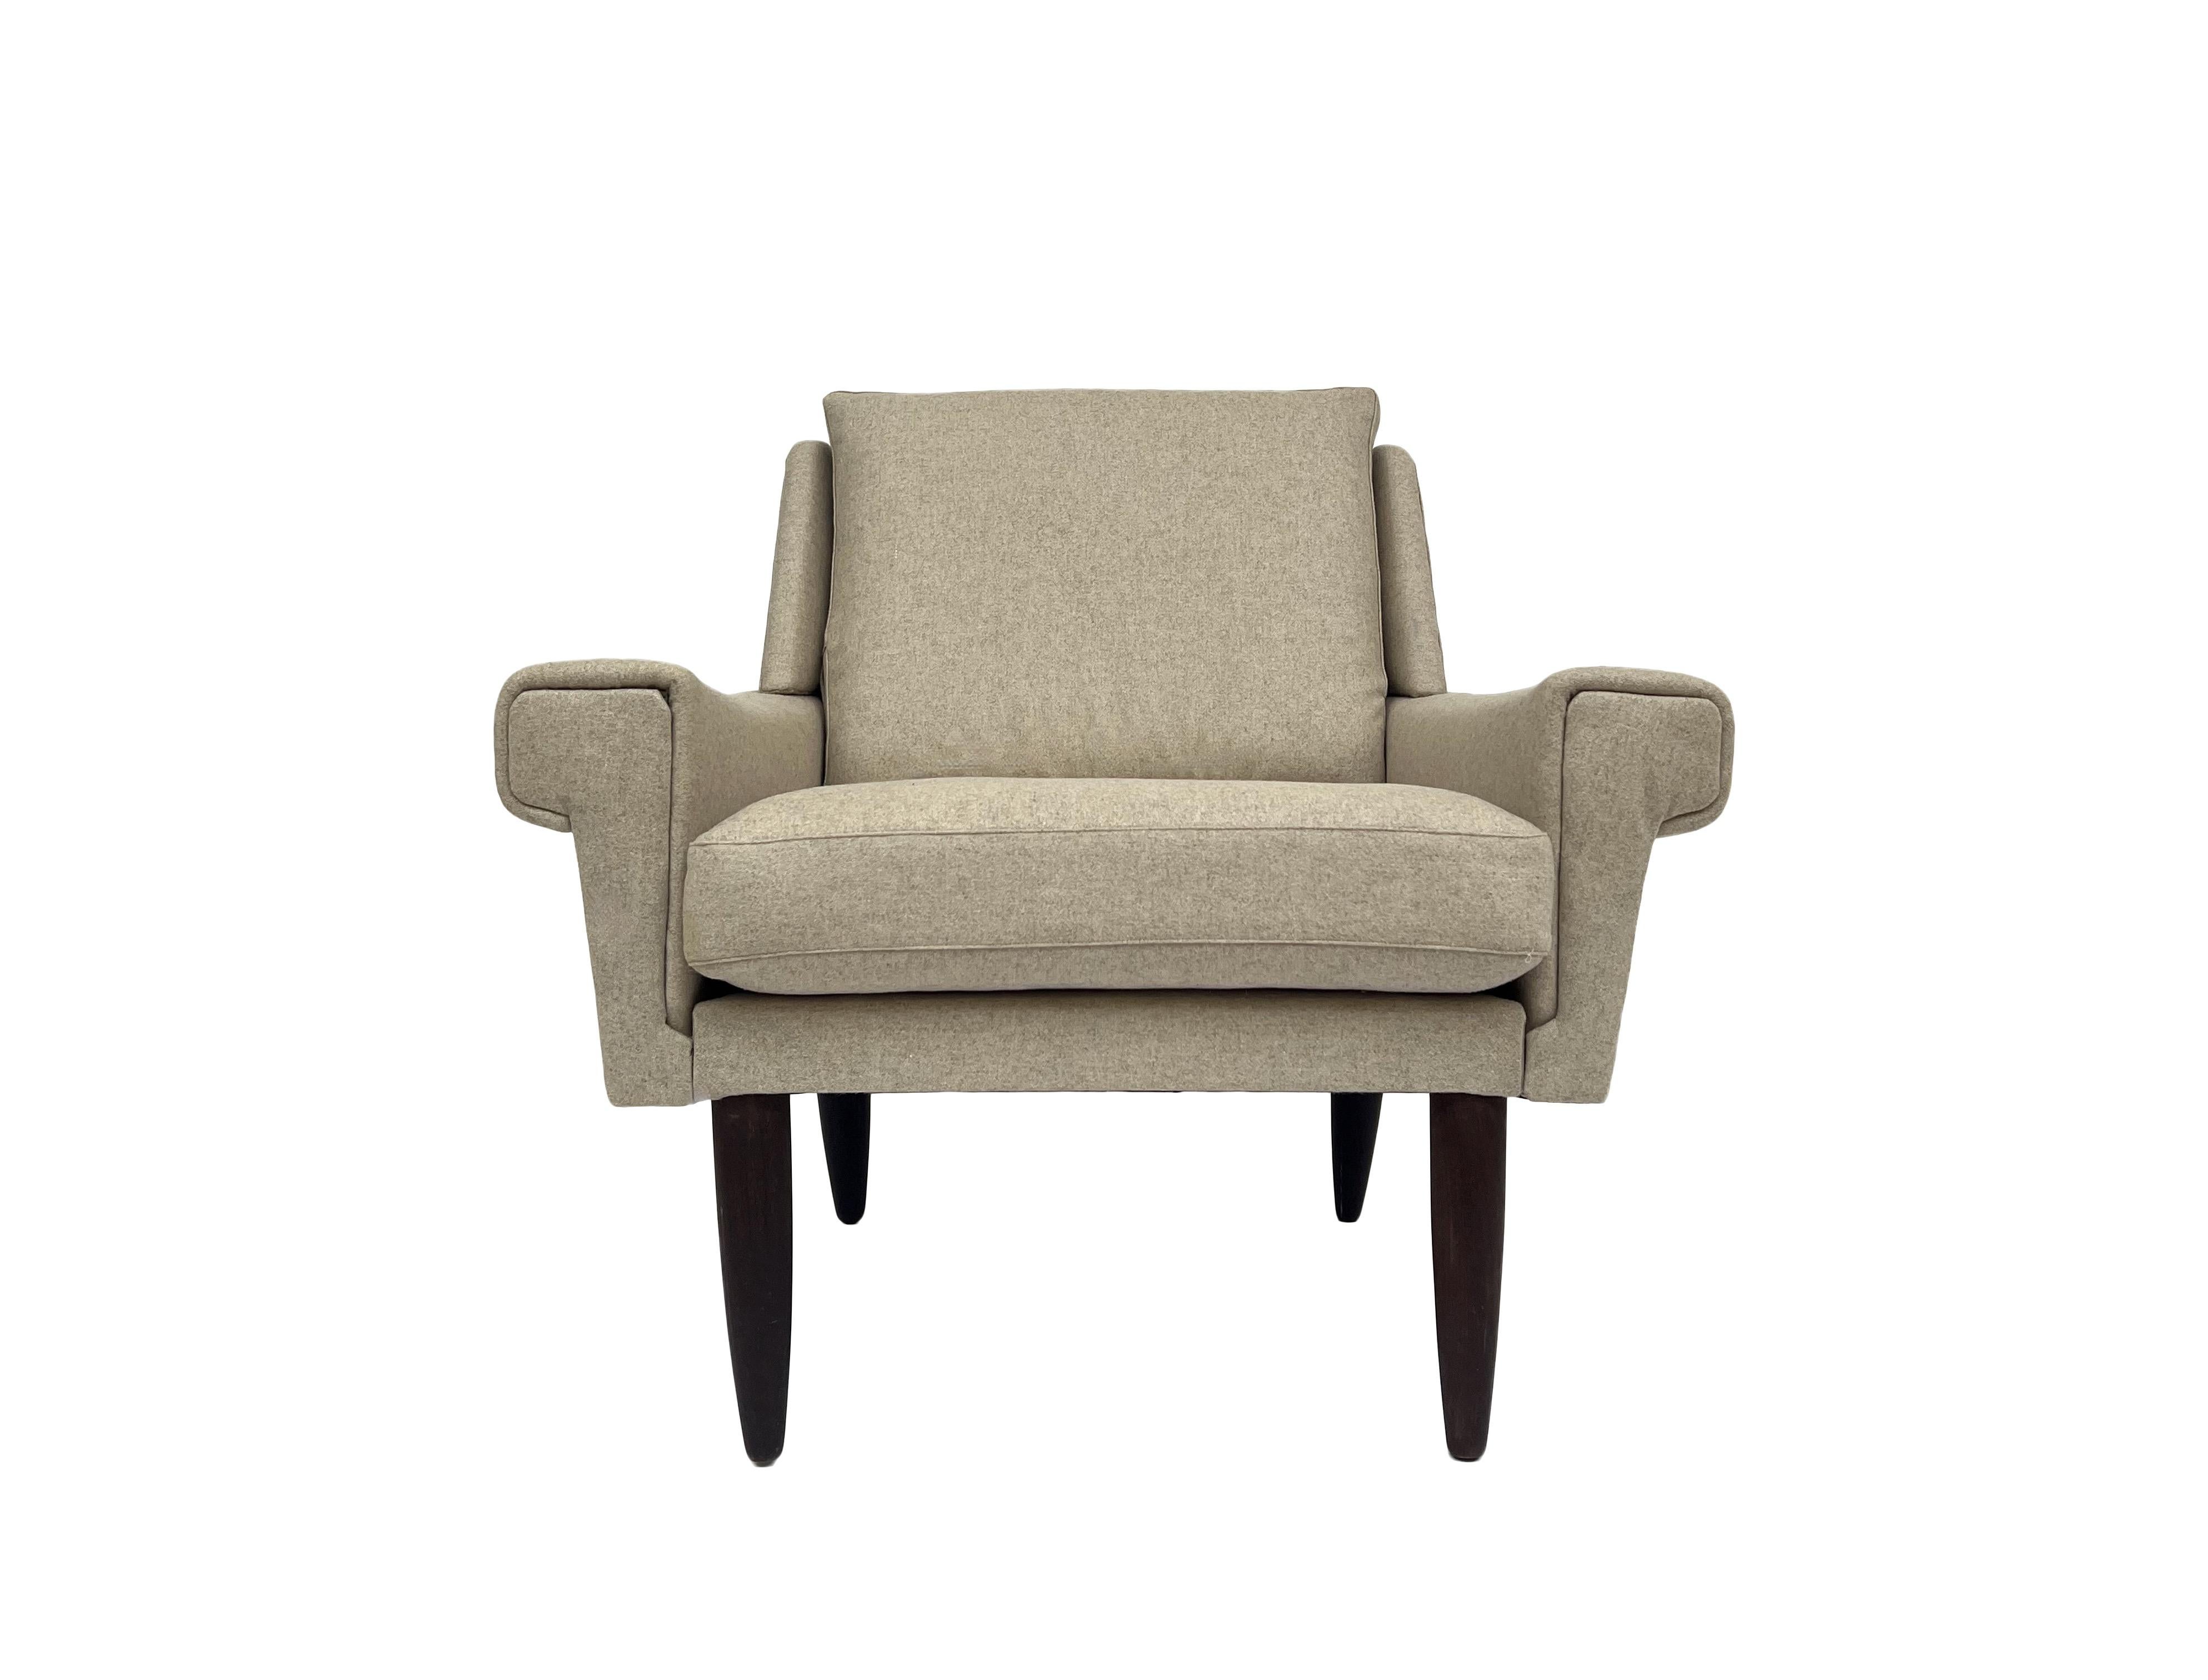 Dieser schöne Sessel aus cremefarbener dänischer Wolle und Teakholz ist eine stilvolle Ergänzung für jeden Wohn- oder Arbeitsbereich.

Der Stuhl hat eine breite Sitzfläche und eine gepolsterte Rückenlehne für mehr Komfort. Ein markantes Stück